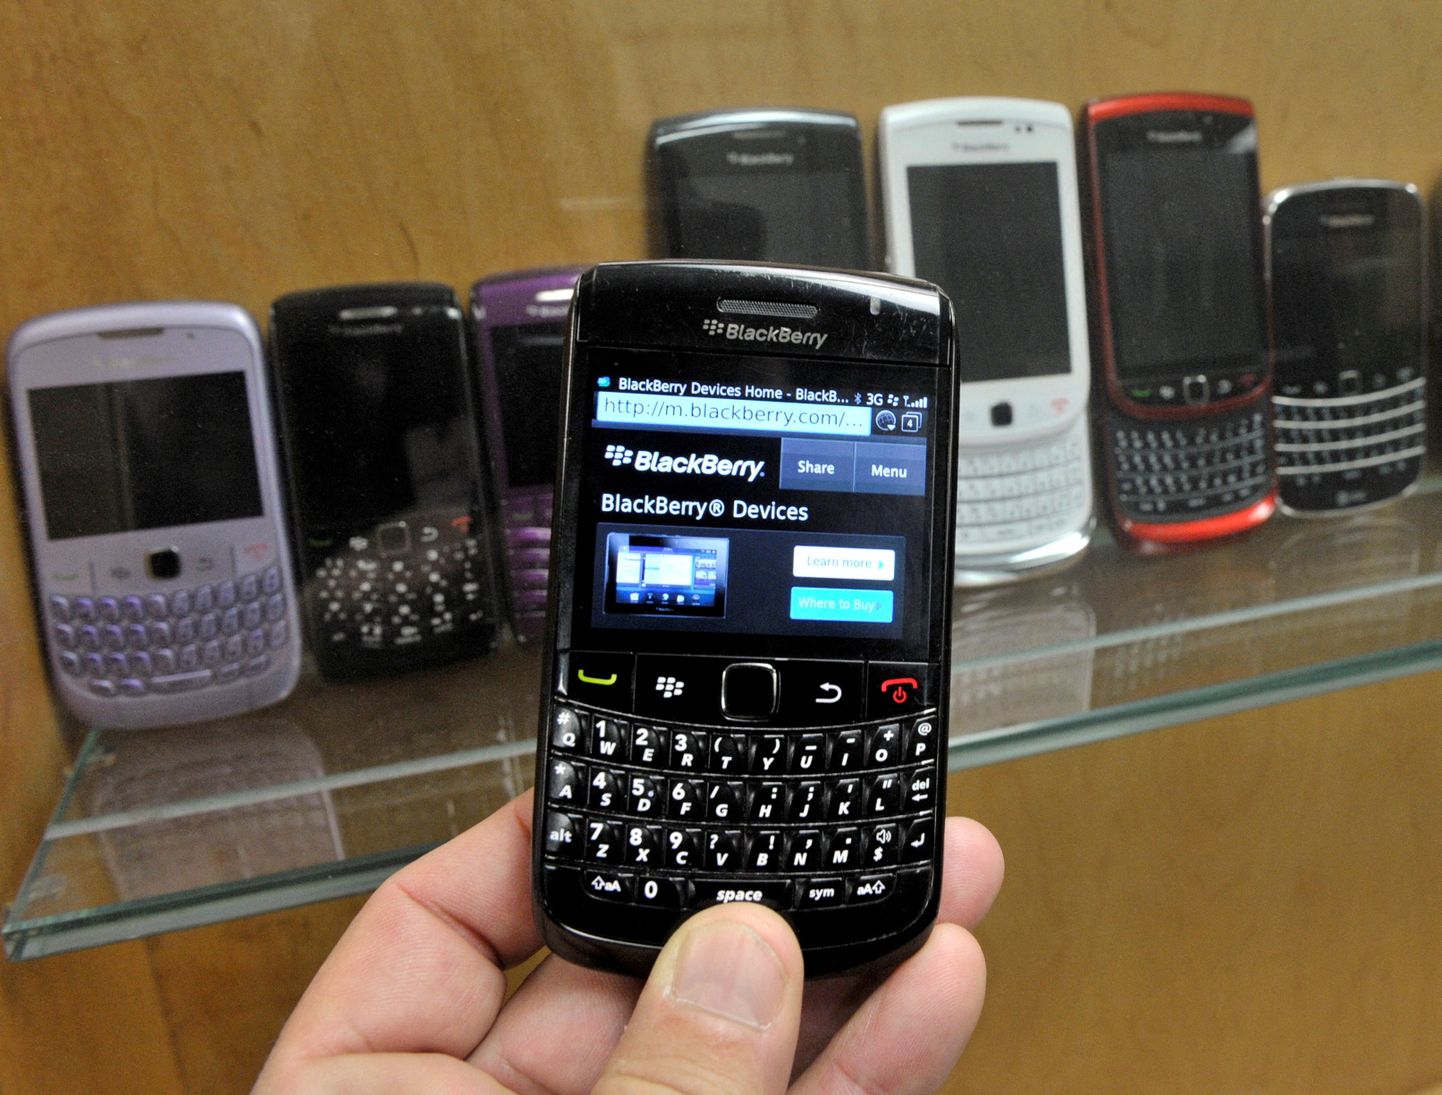 BlackBerry telefonide hiilgeaeg jäi aastatuhande alguskümnendi(te)sse. Need olid e-postile keskendunud äritelefonid täheklaviatuuri ja turvalise äritarkvaraga. Pildil 2012. aasta tippmudel.